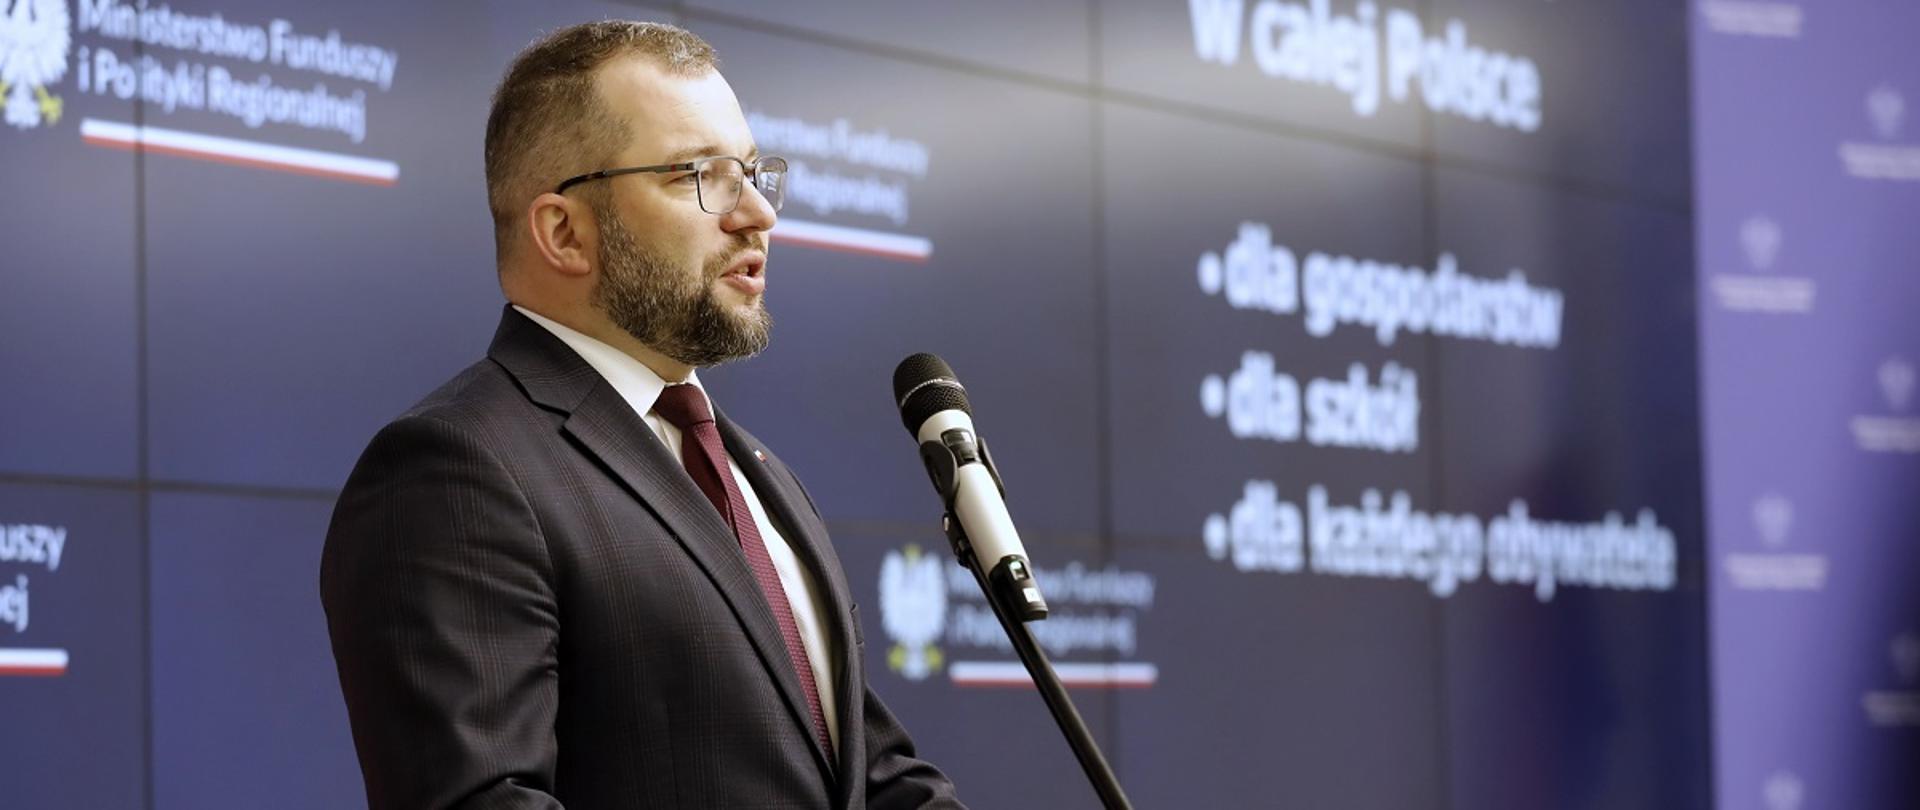 
Minister funduszy i polityki regionalnej Grzegorz Puda przemawia do mikrofonu, za jego plecami baner MFiPR